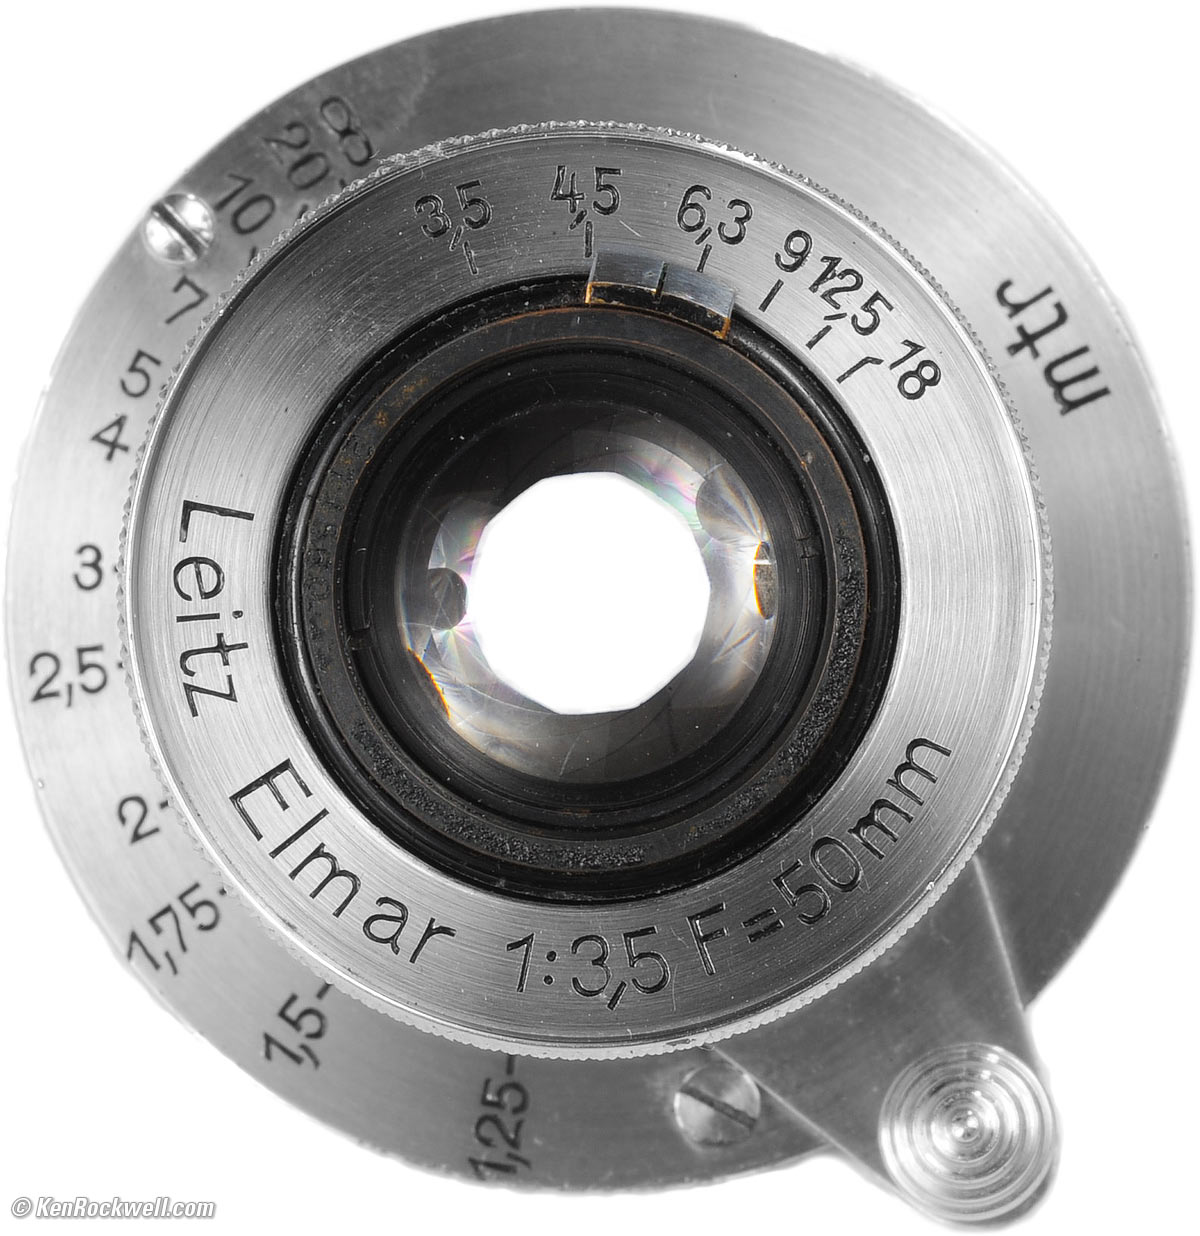 カメラ レンズ(単焦点) LEICA ELMAR 50mm f/3.5 Review